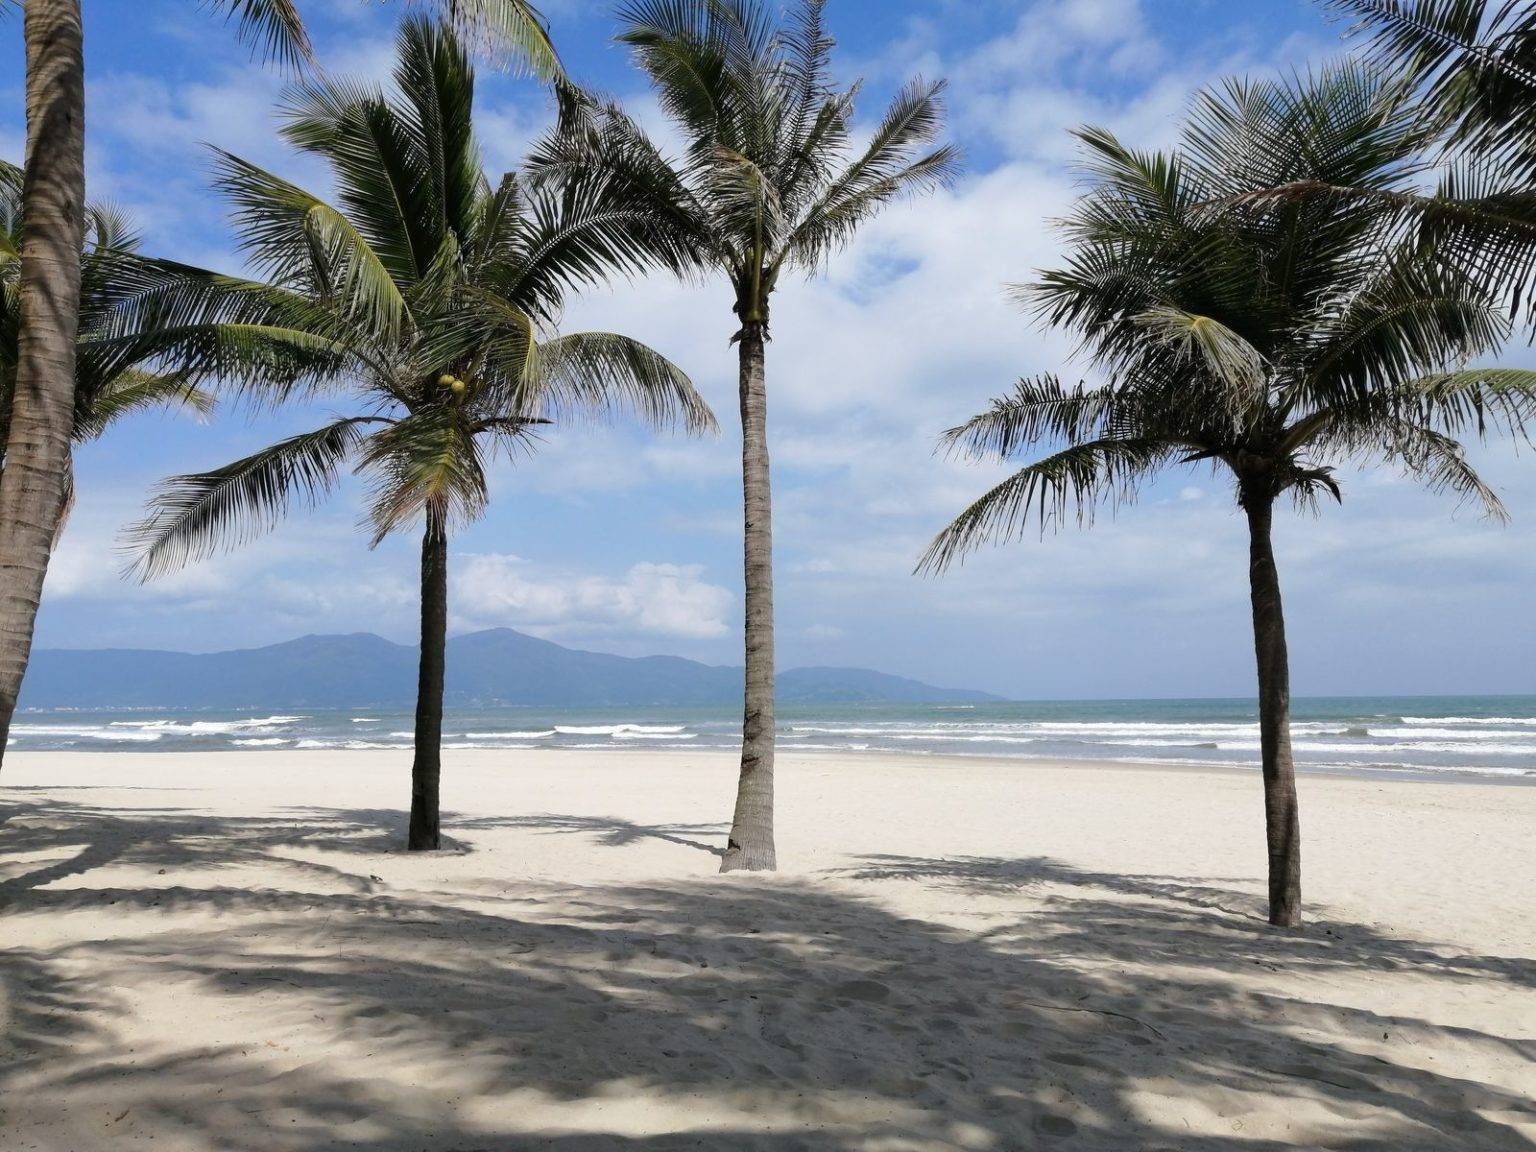 Пляжи вьетнама для отдыха — где находятся, описание, фото [31 пляж]